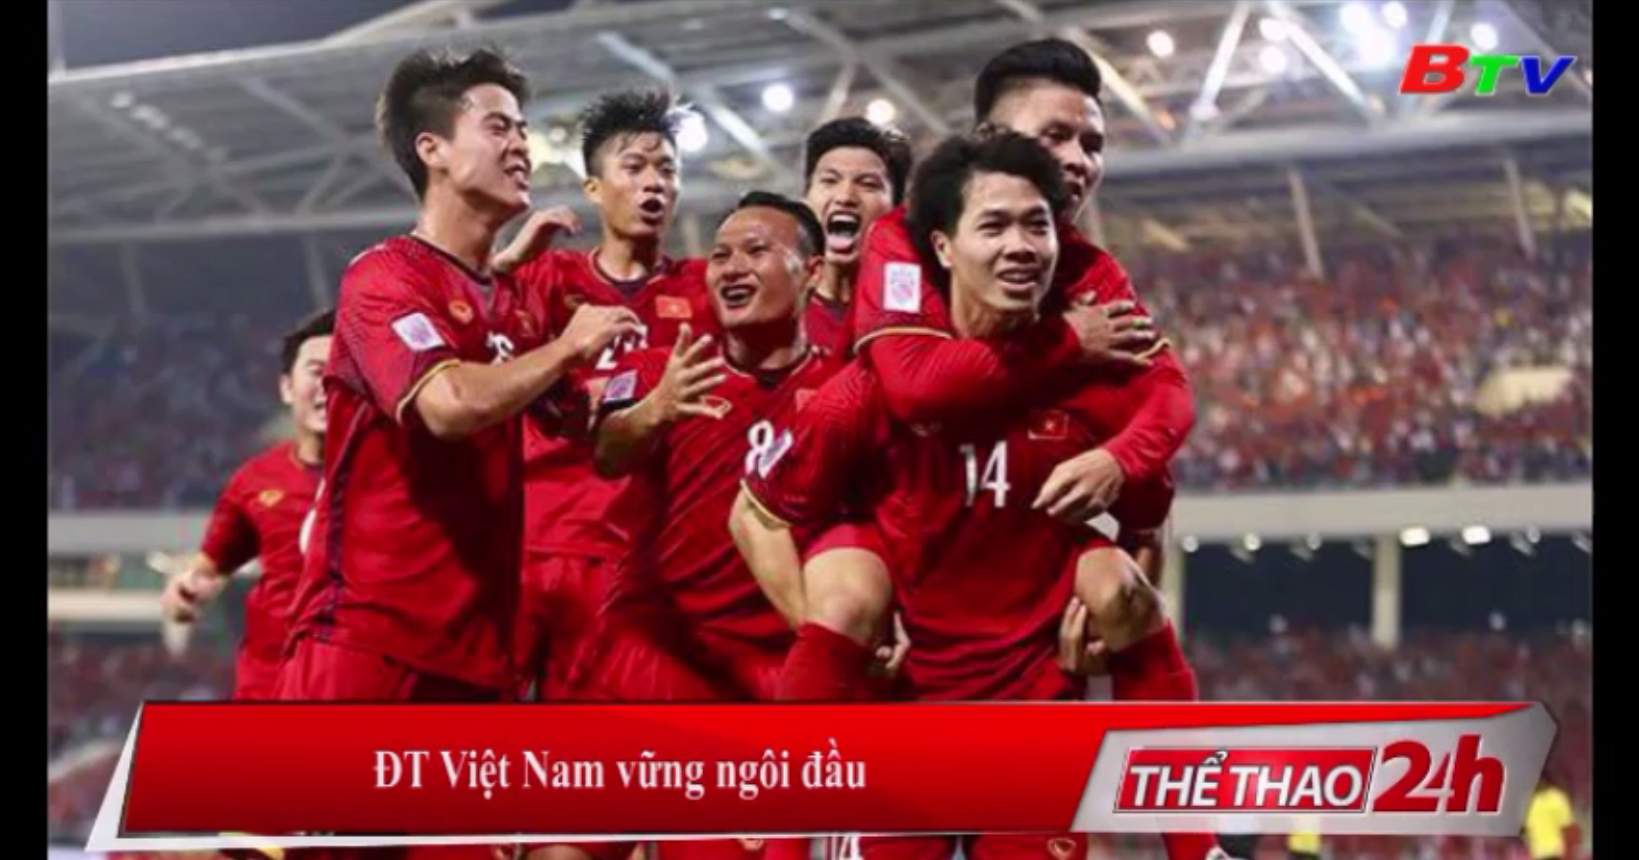 ĐT Việt Nam vững ngôi đầu